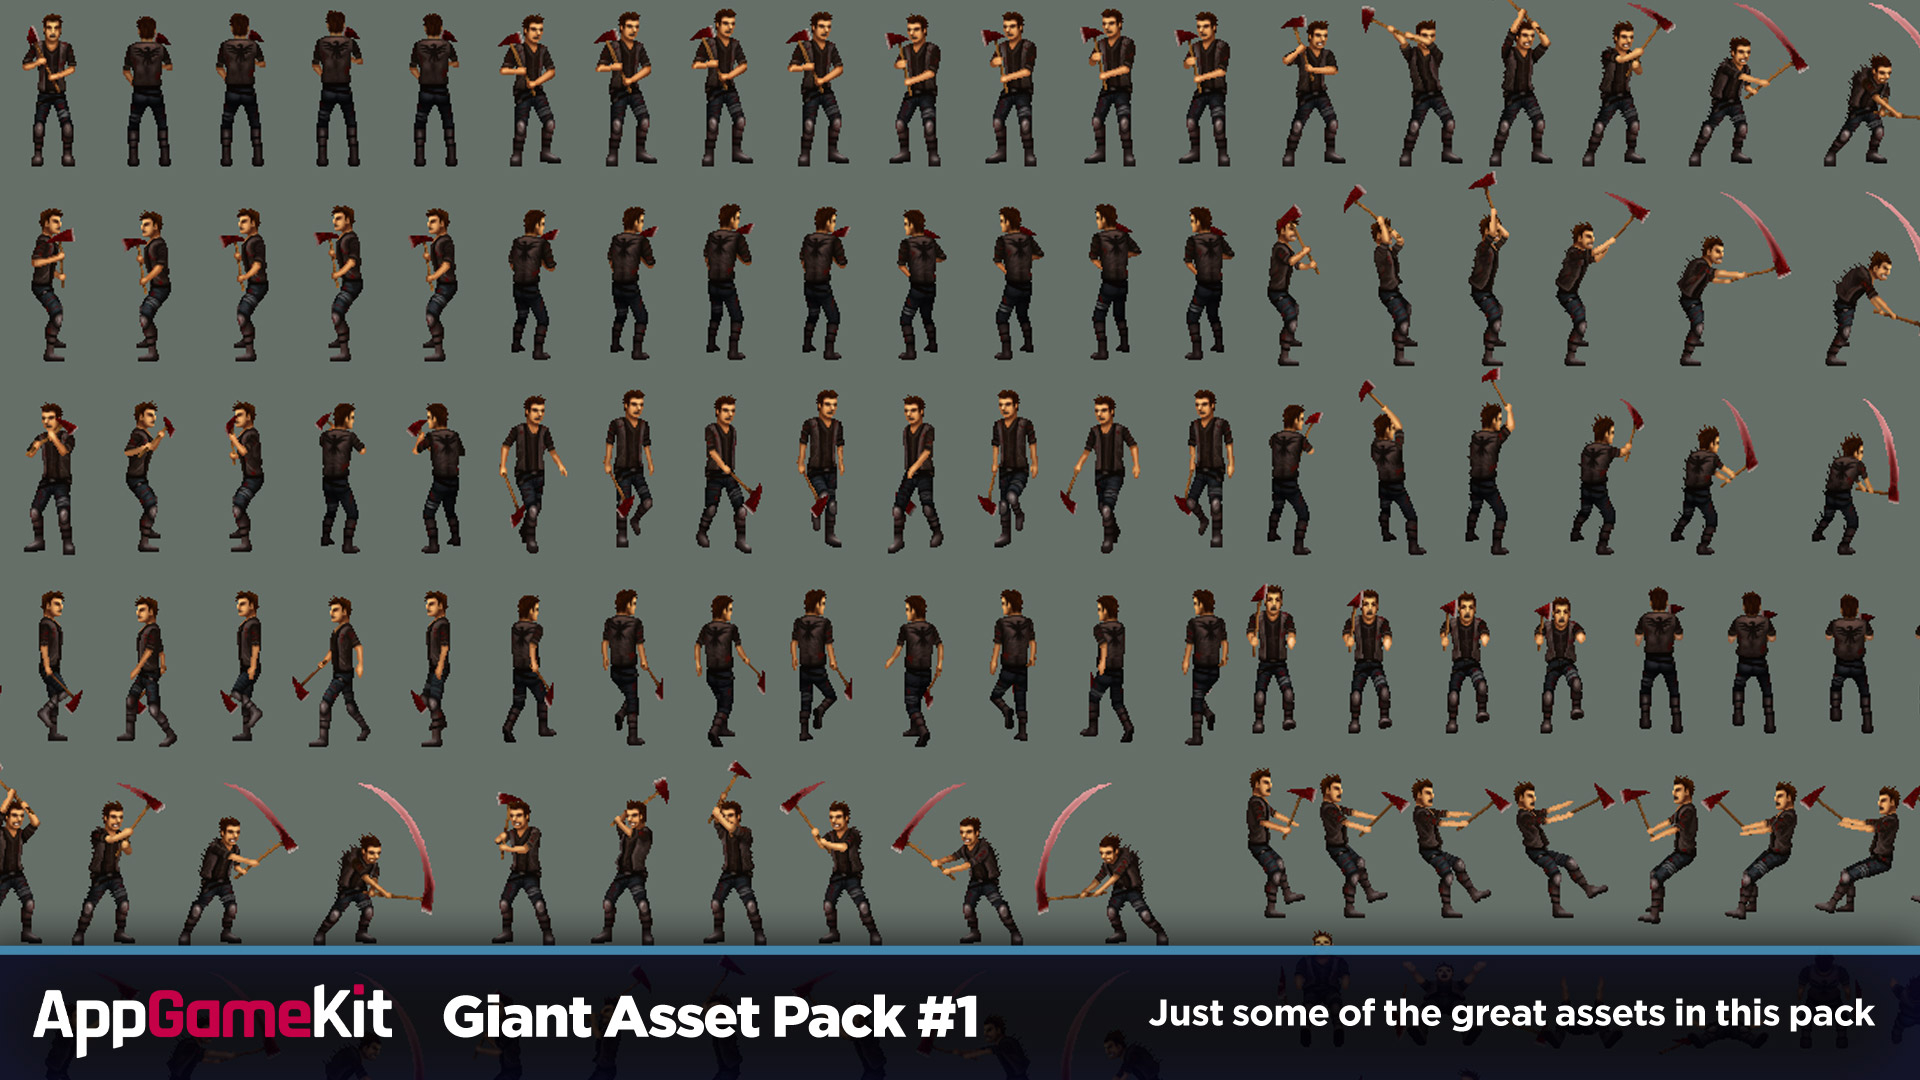 AppGameKit Classic - Giant Asset Pack 1 DLC EU Steam CD Key